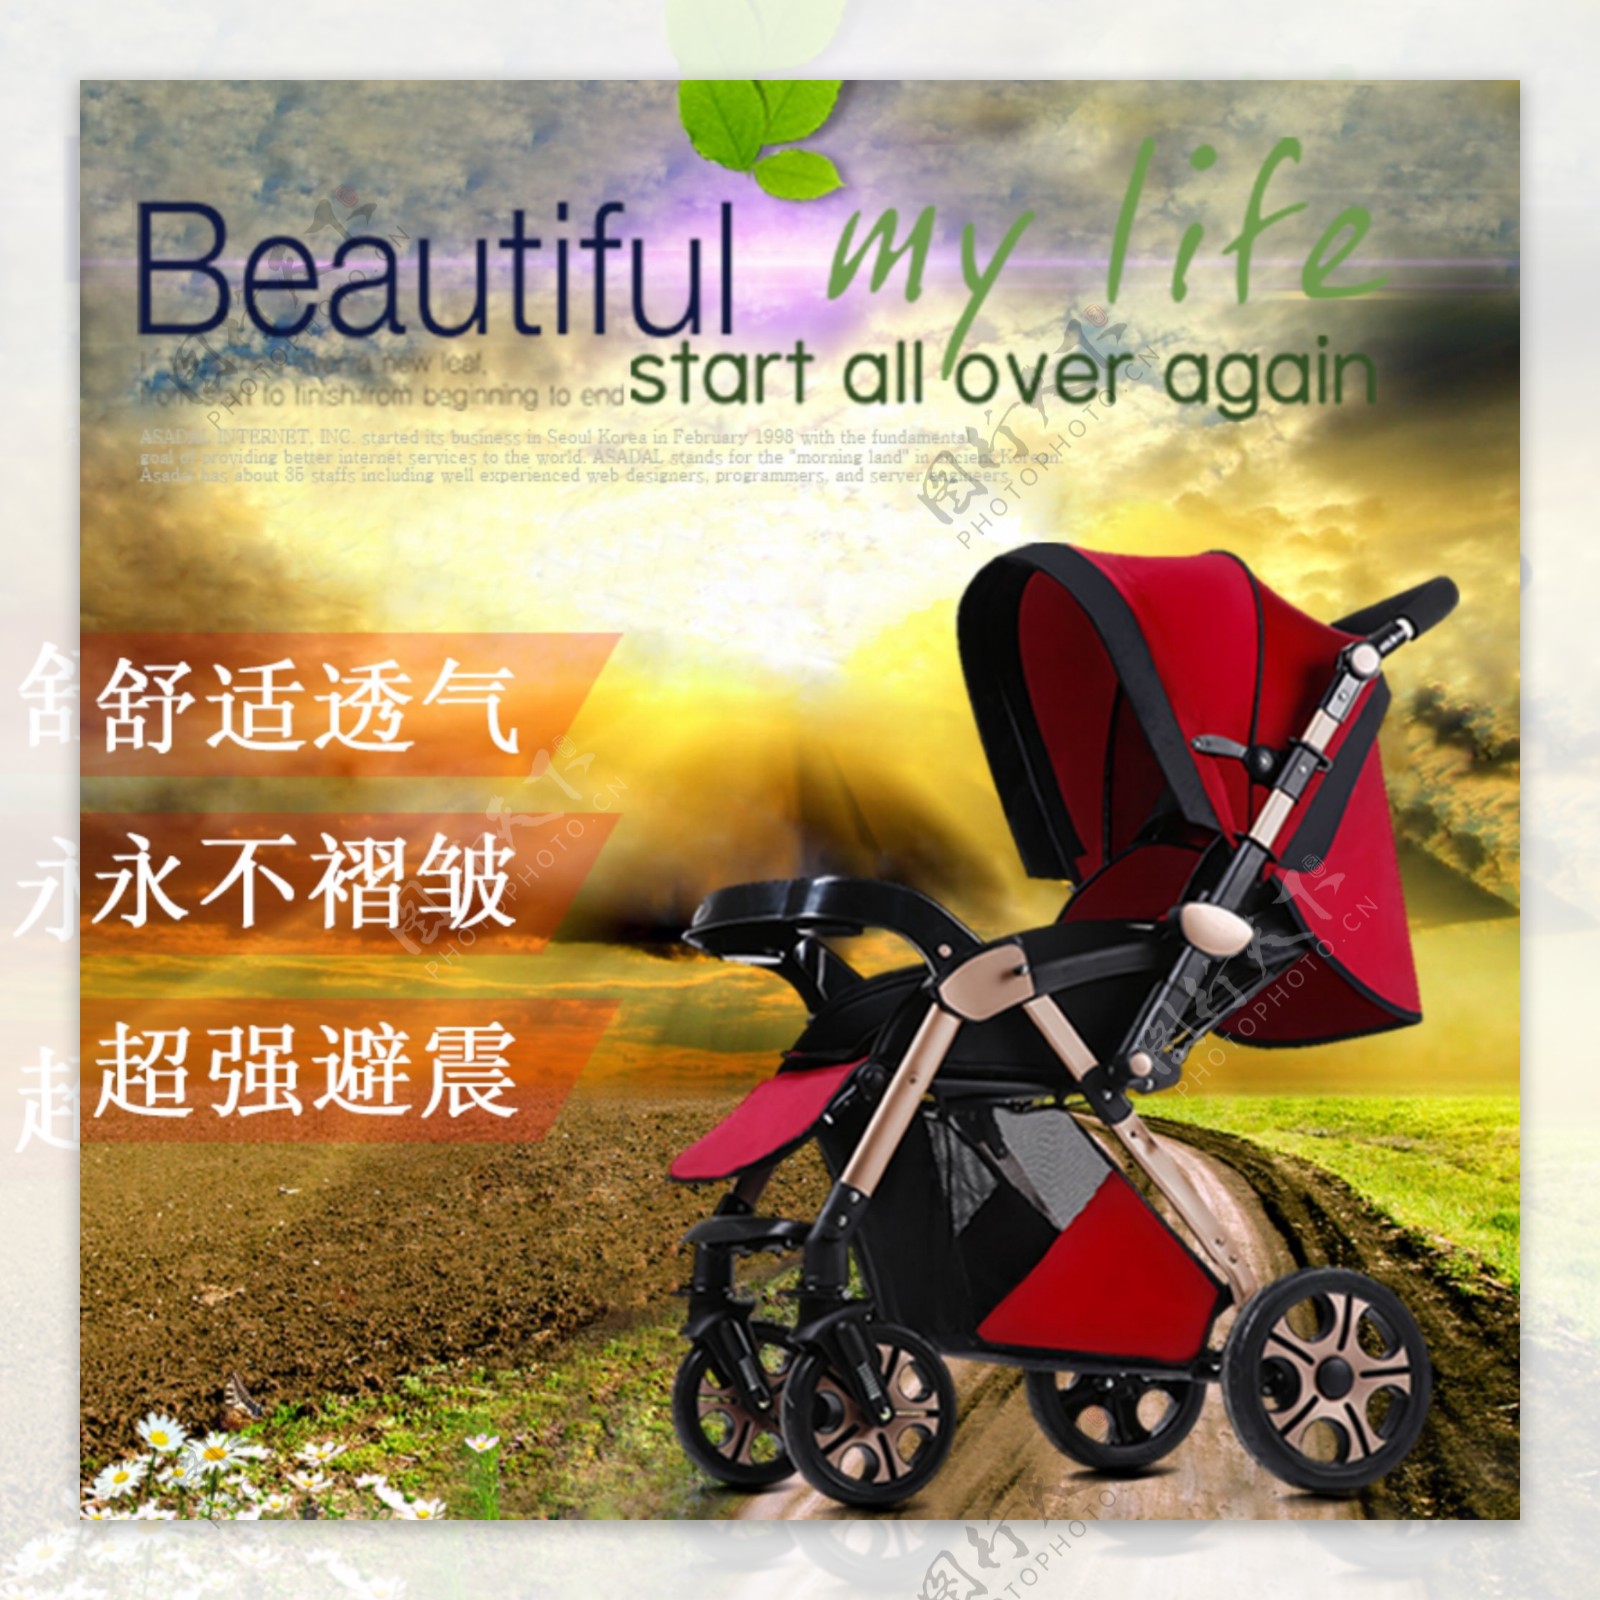 婴儿车椅安全可靠耐用